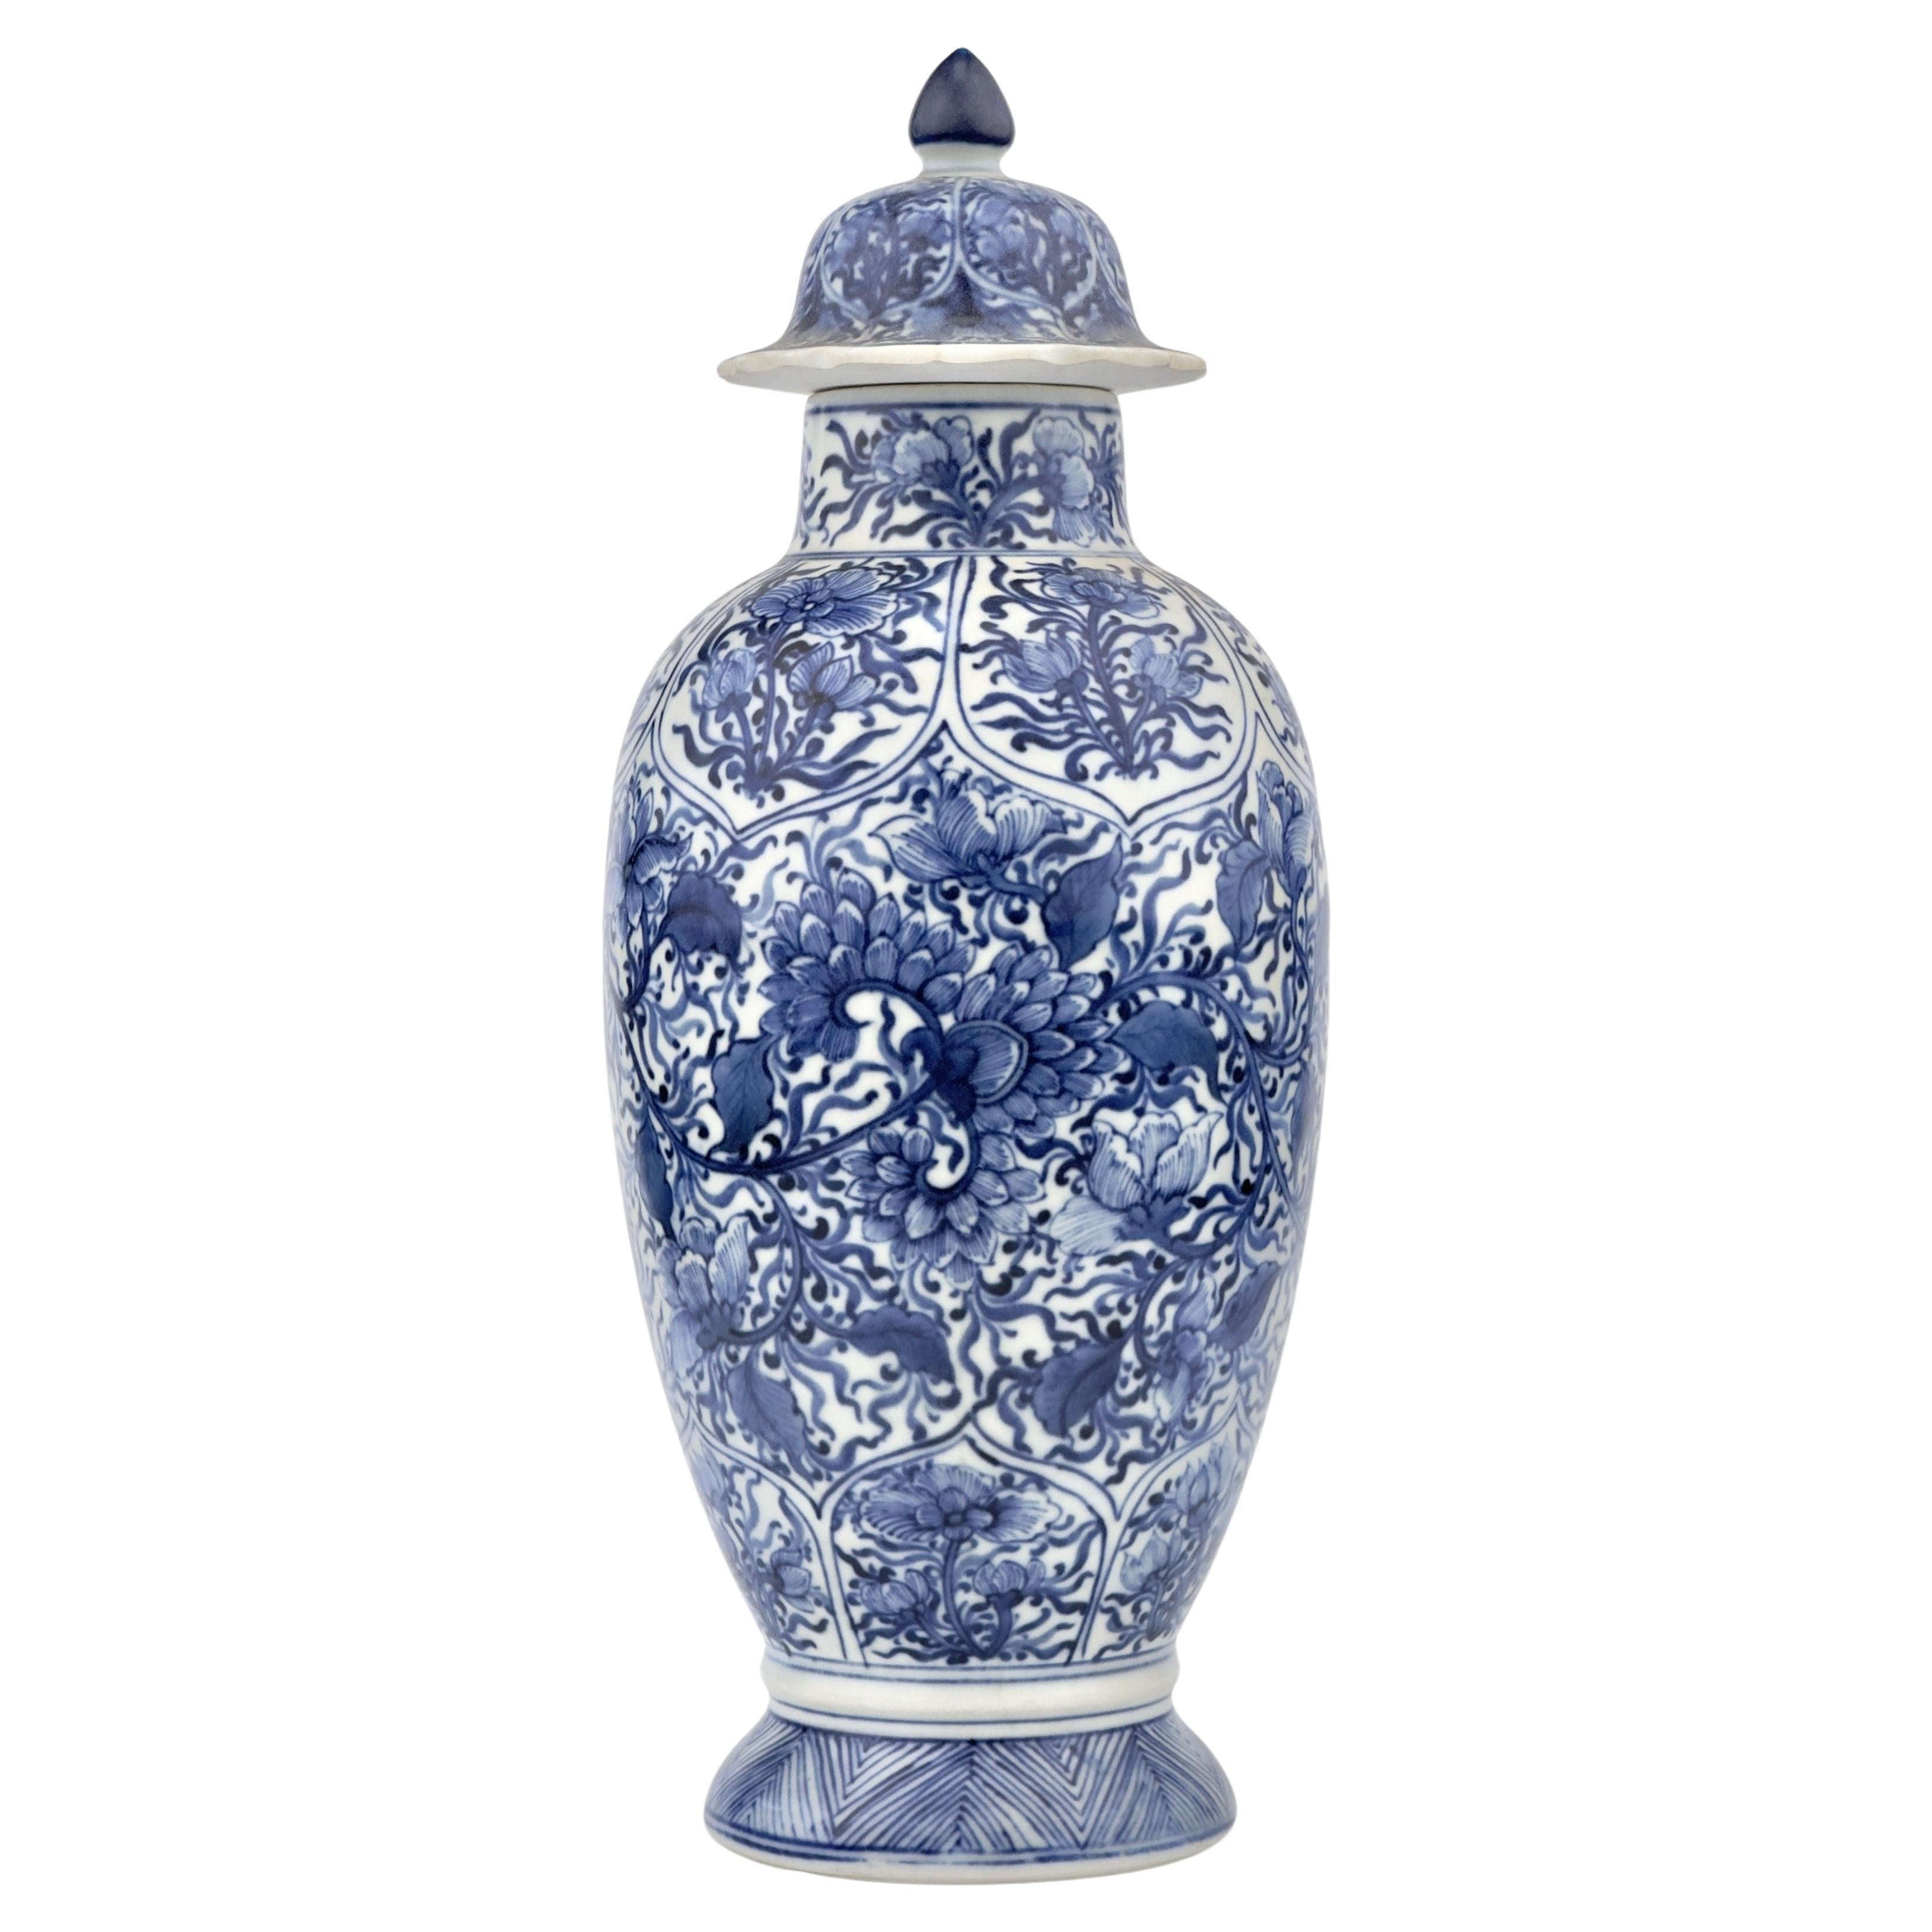 Vase balustre bleu et blanc, Dynastie Qing, époque Kangxi, vers 1690